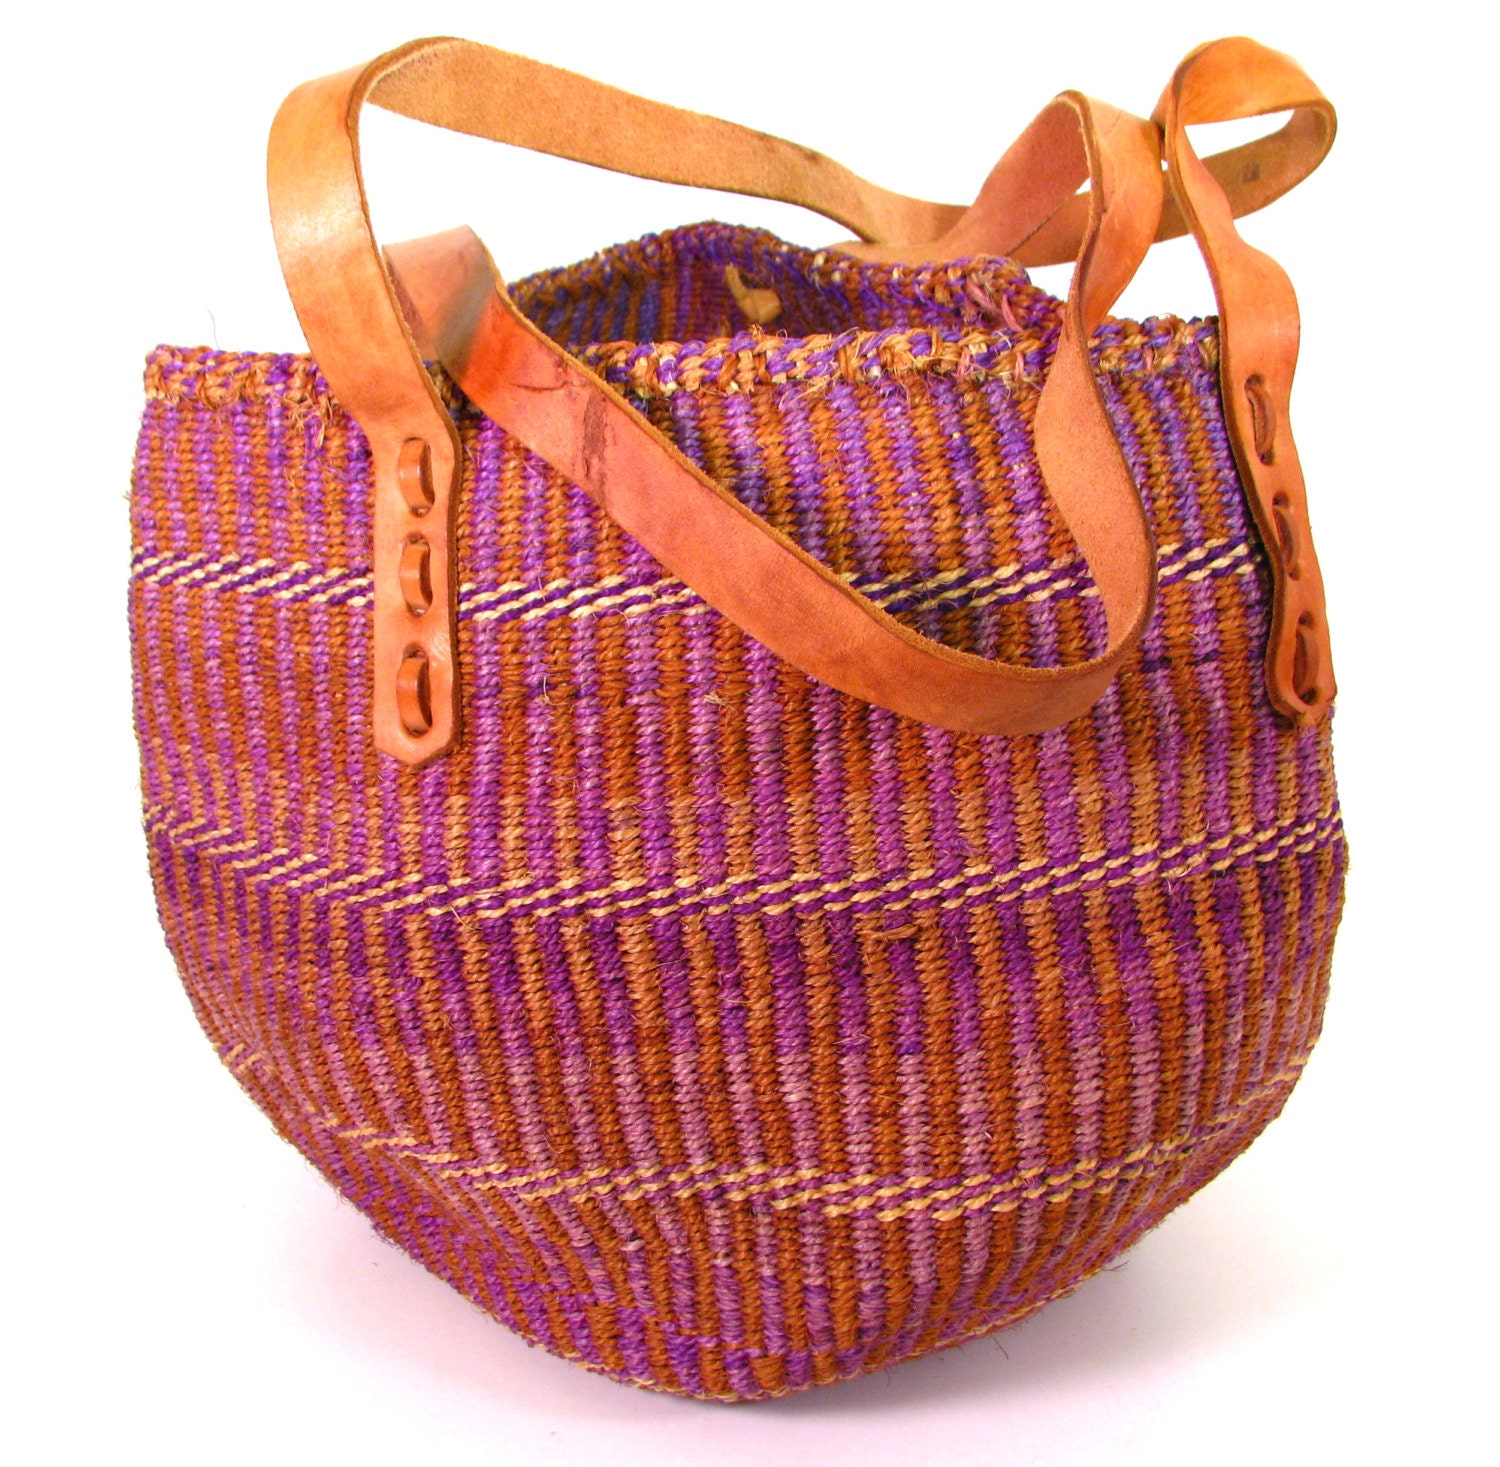 Large Market Bag. Kenya Jute Sisal Woven Bag. Shoulder Bag.